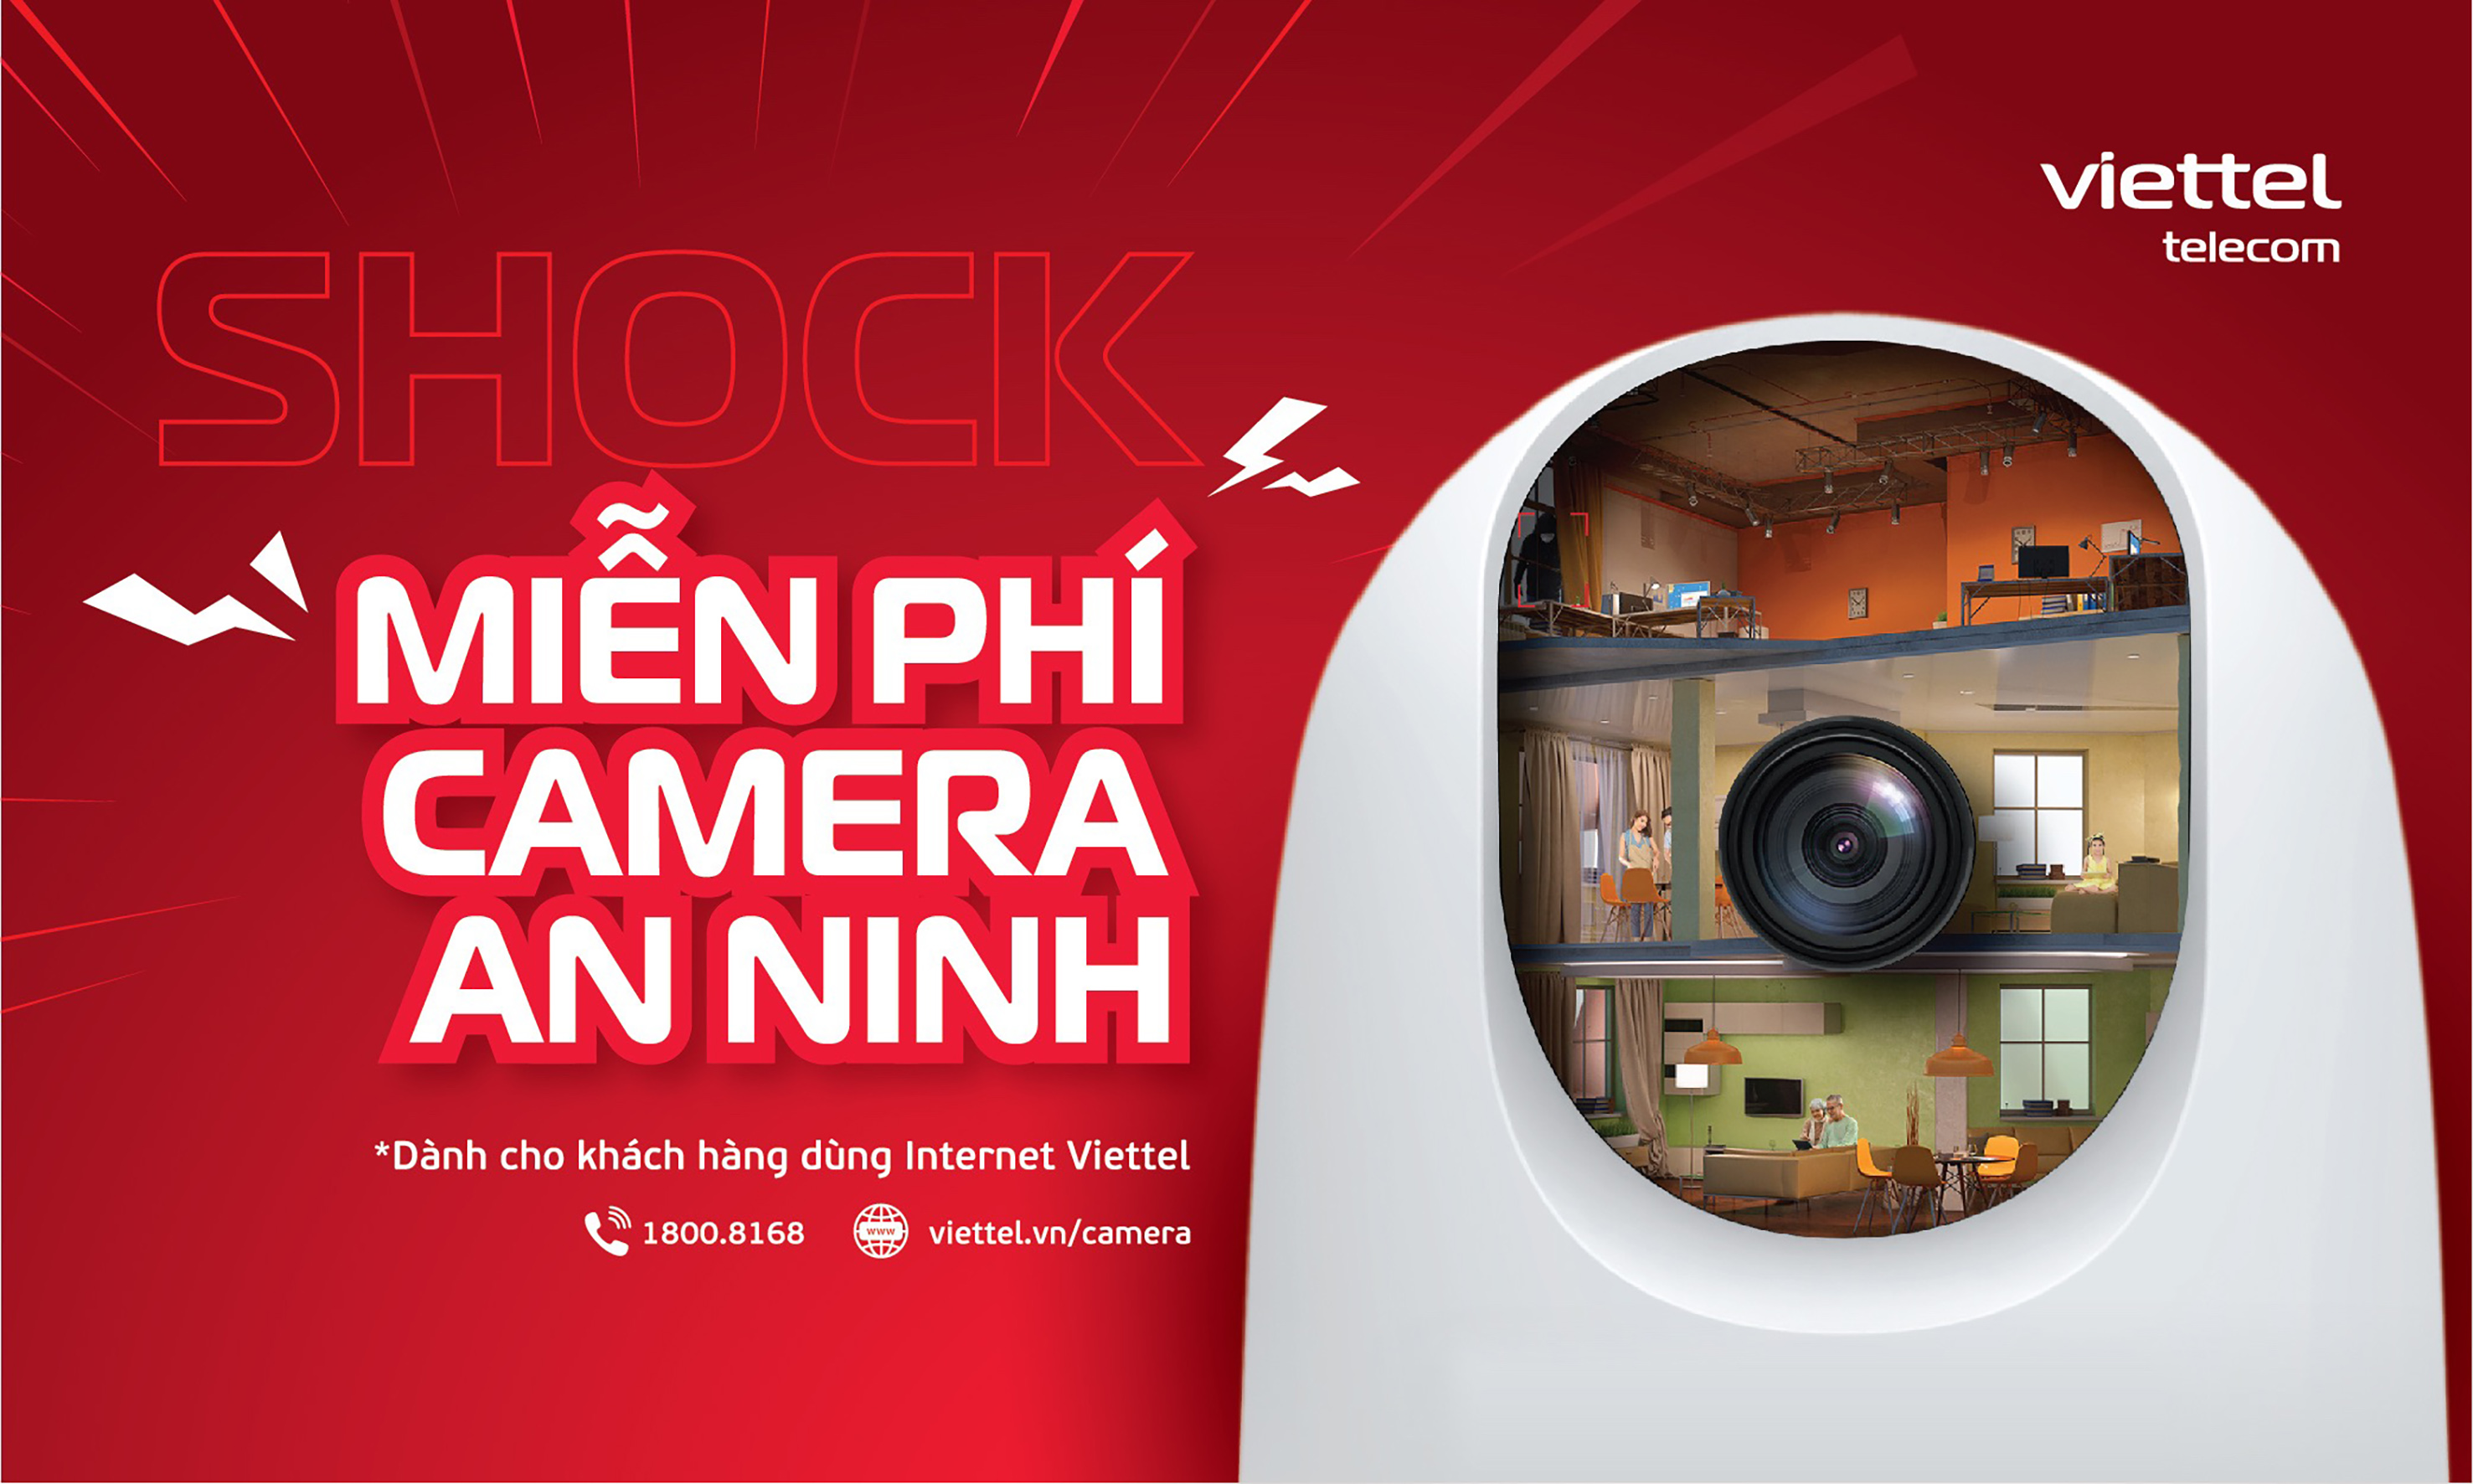 Miễn phí camera an ninh cho khách hàng dùng Internet Viettel.